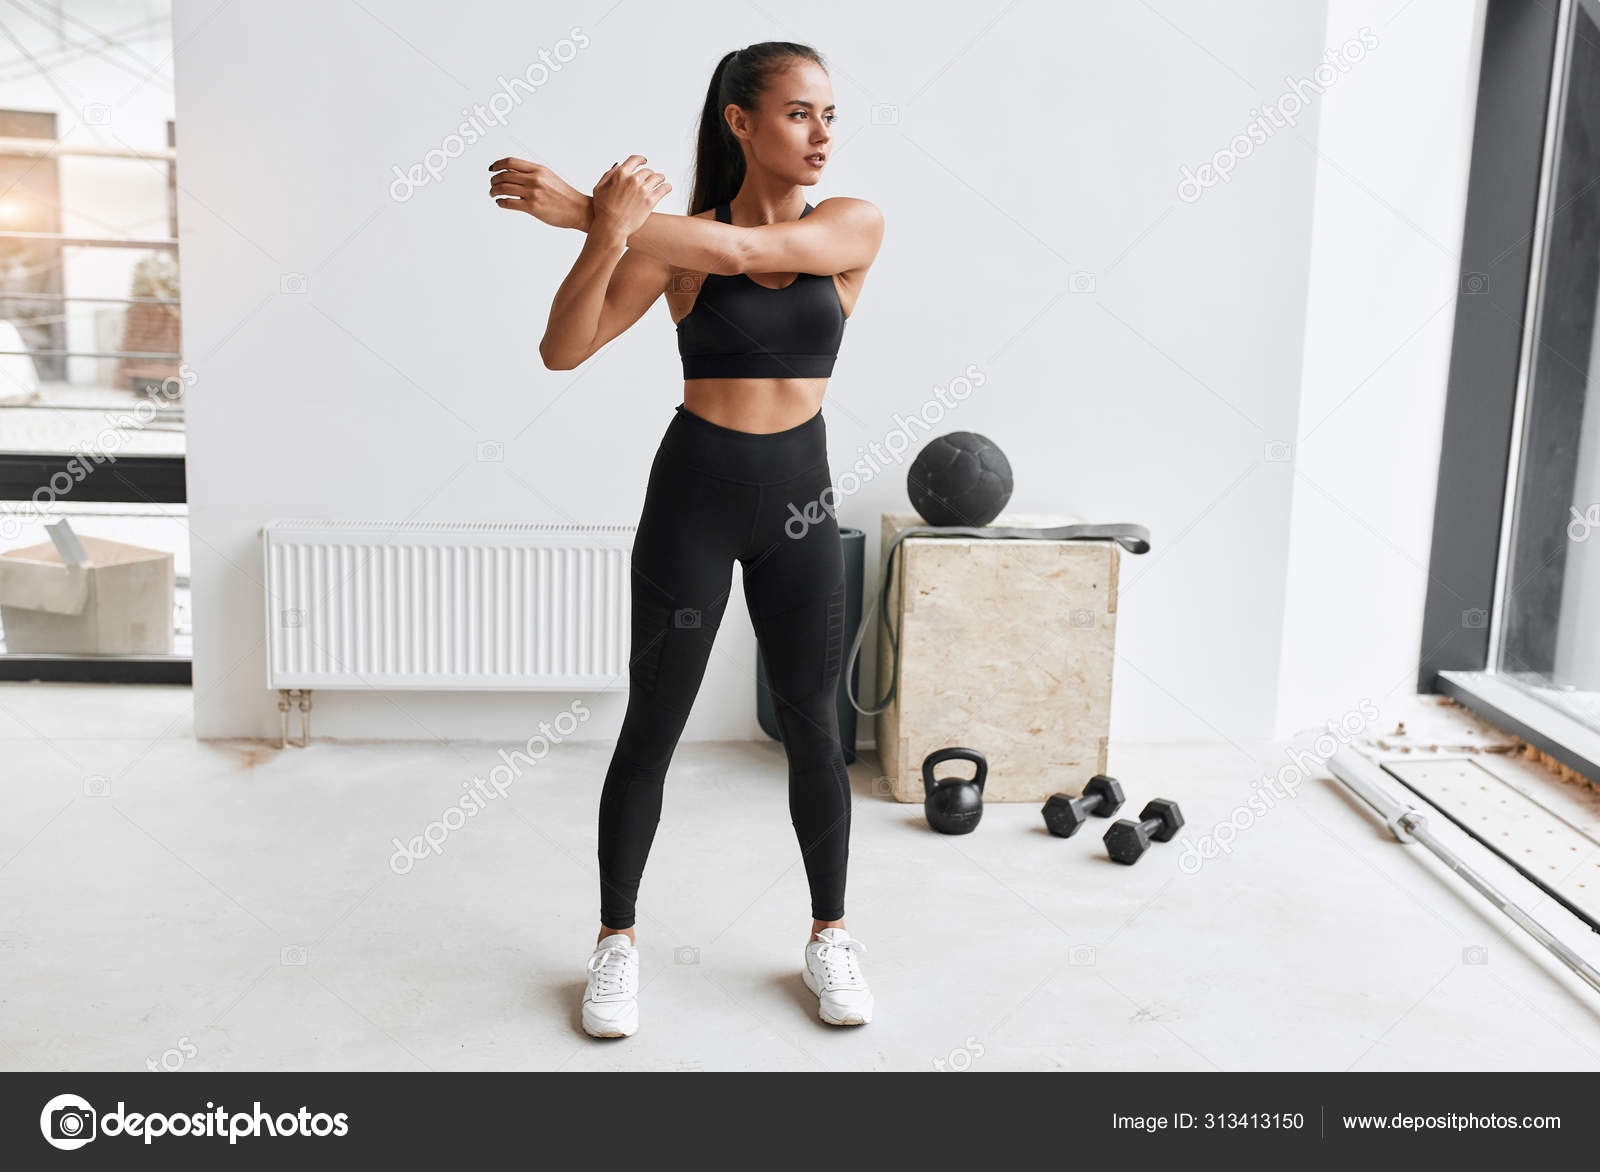 Caucásico deporte chica de calentamiento y estirar el cuerpo antes de hacer  ejercicio: fotografía de stock © ufabizphoto #314705376